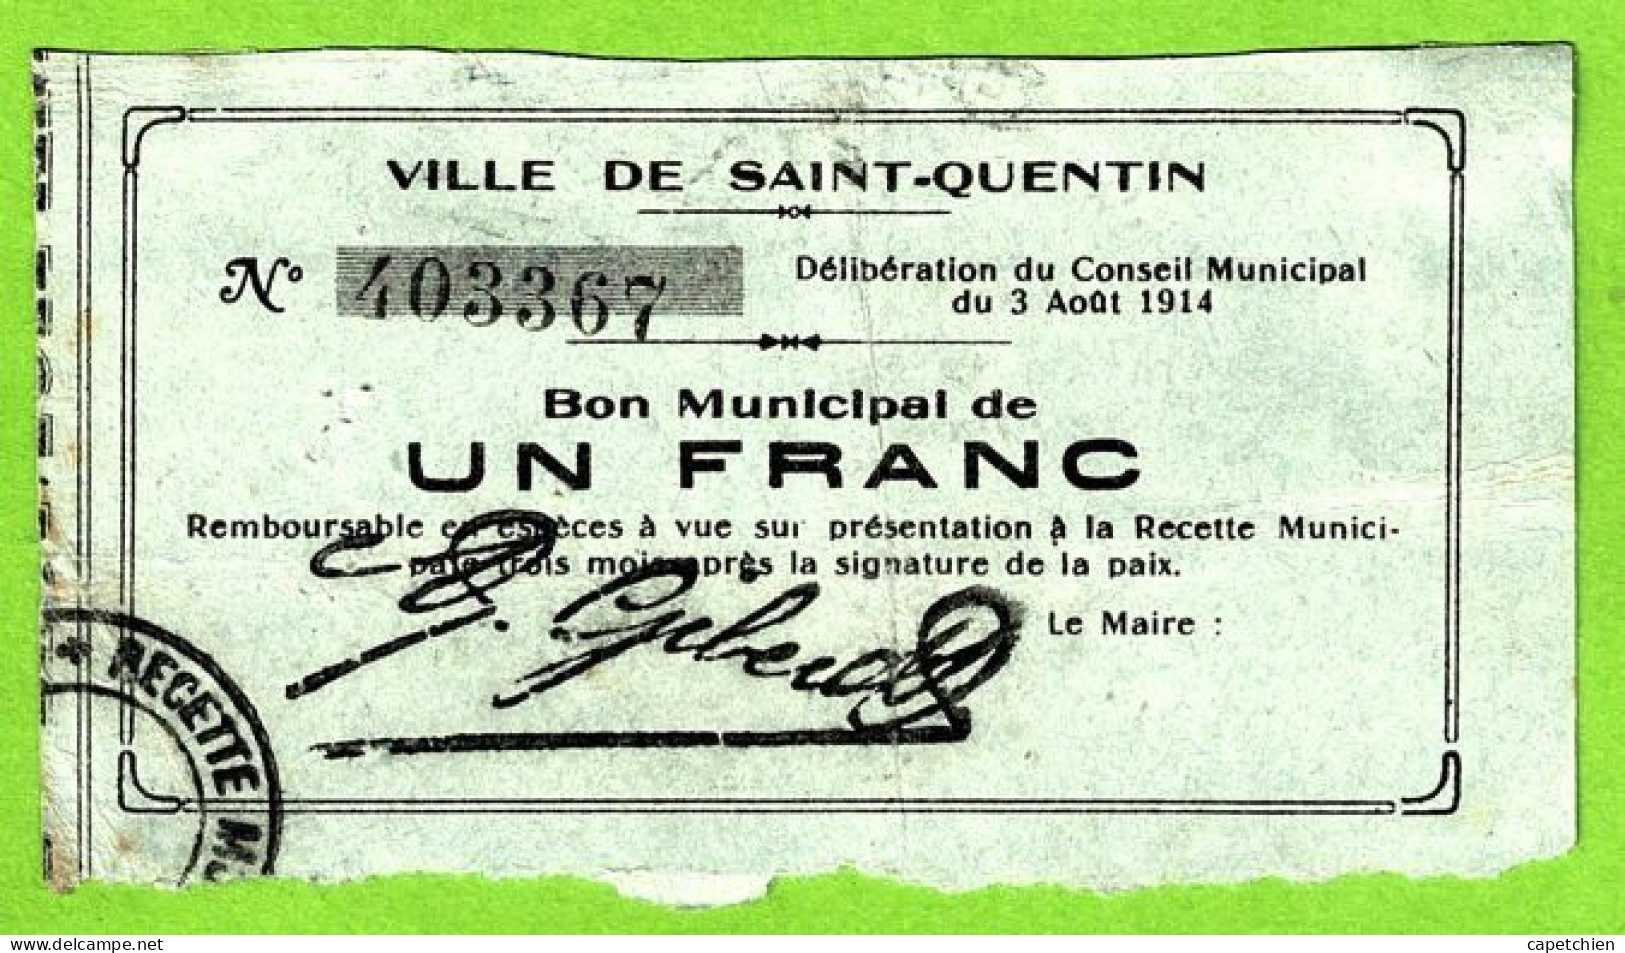 FRANCE / VILLE De St QUENTIN  / BON MUNICIPAL De 1 FRANC / 3 AOUT 1914 / 403367 / SERIE - Chambre De Commerce